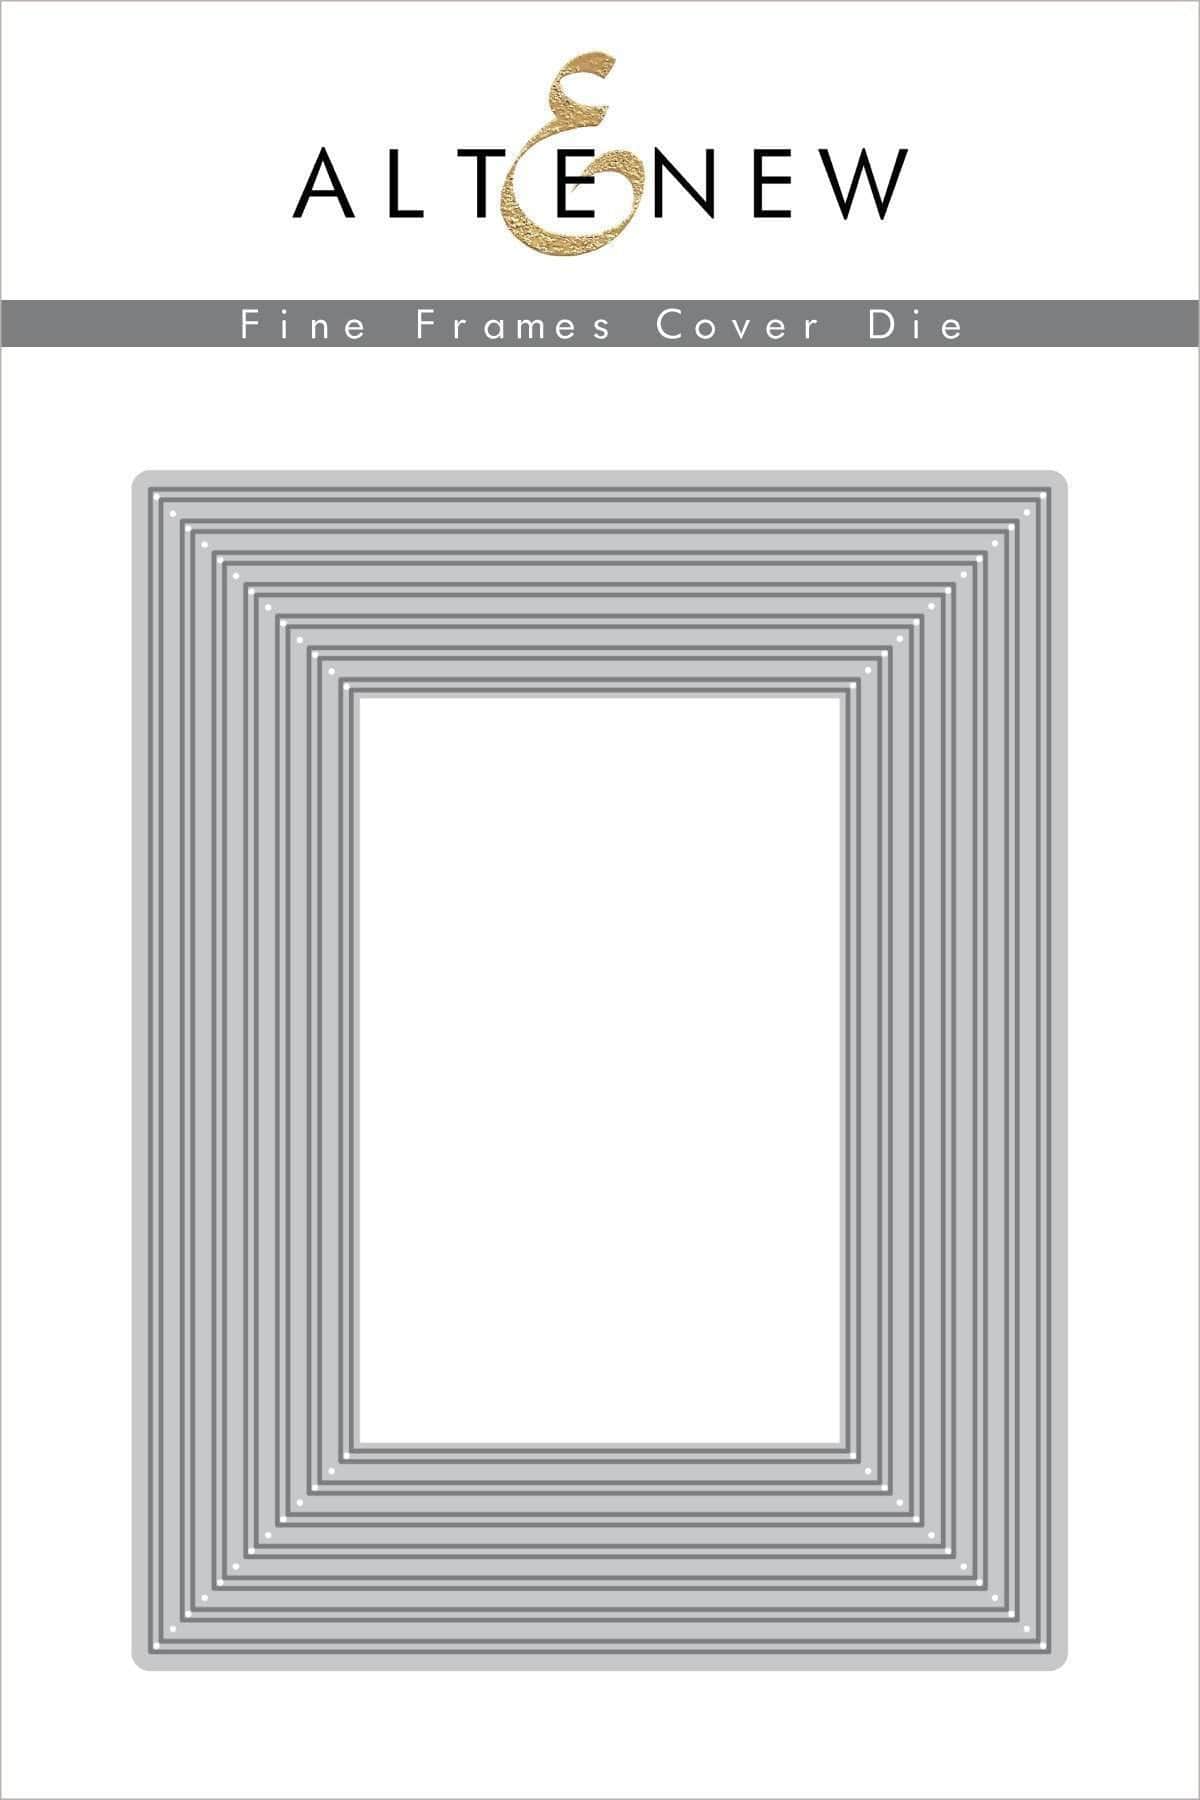 Dies Fine Frames Cover Die